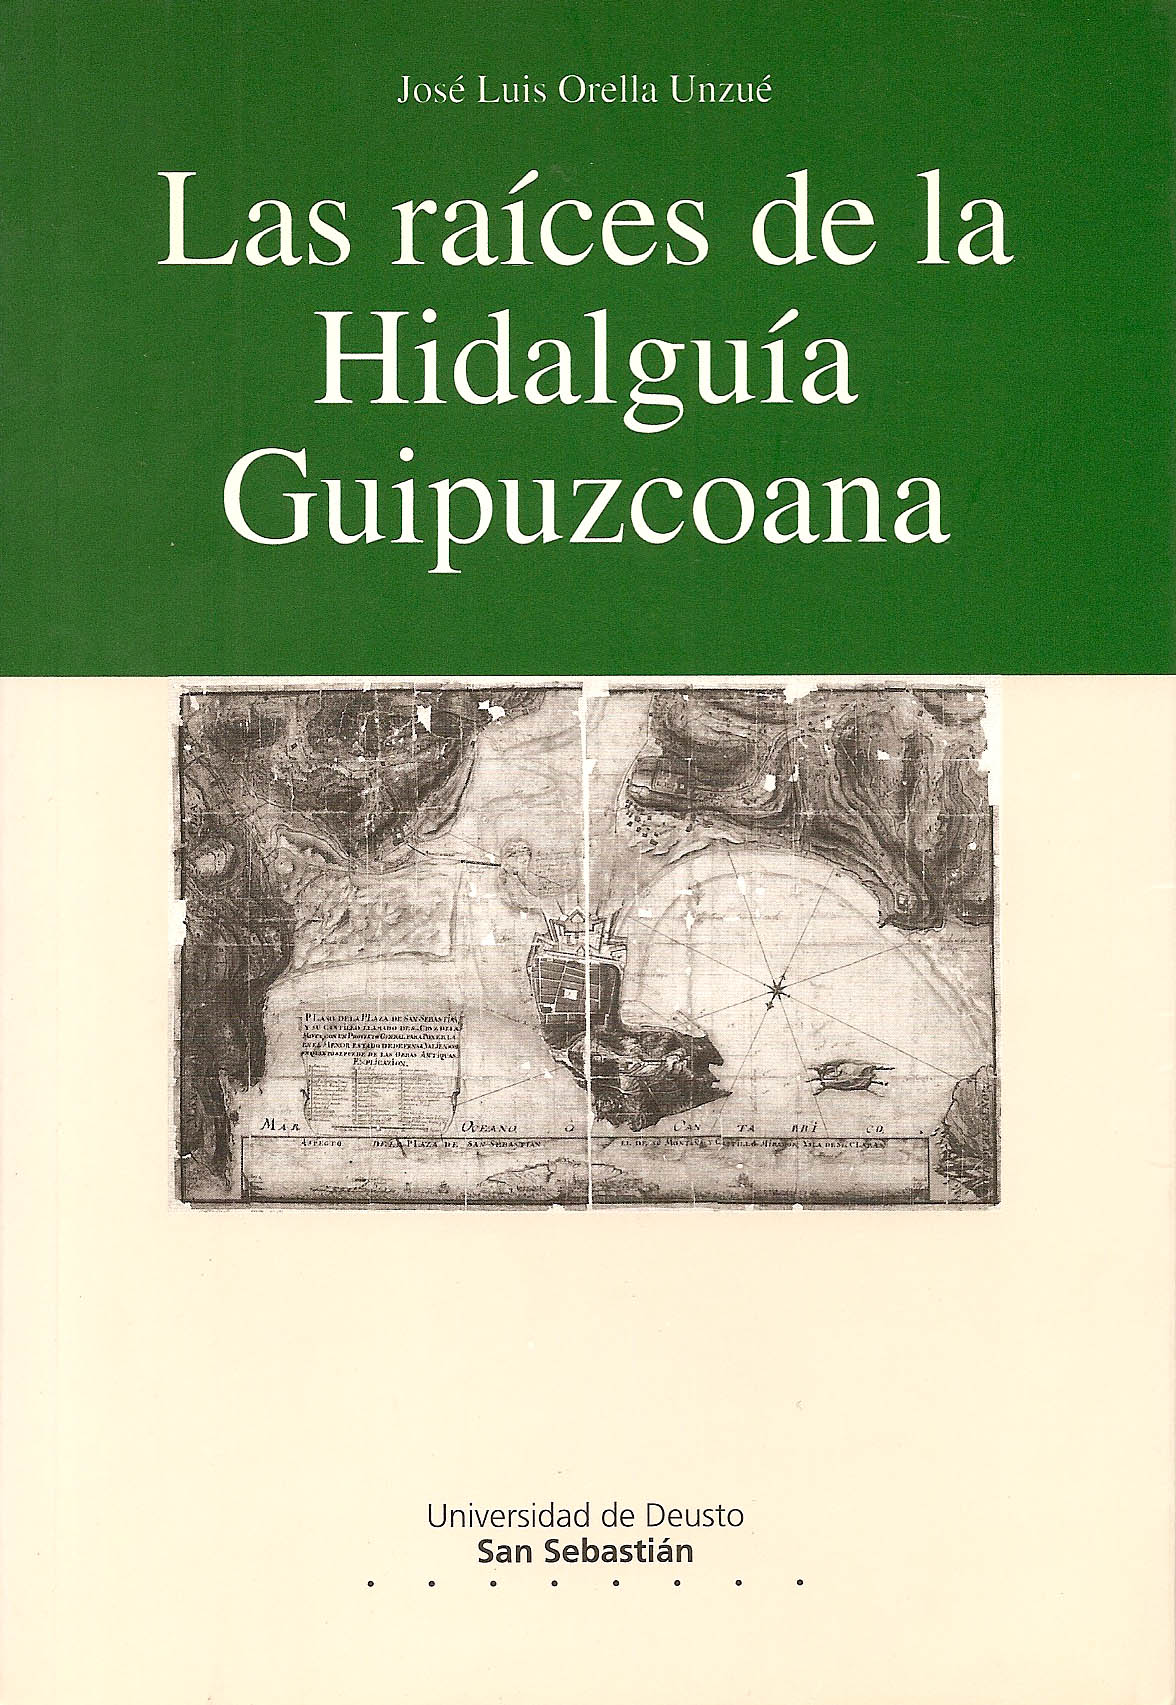 Imagen de portada del libro Las raíces de la hidalguía guipuzcoana